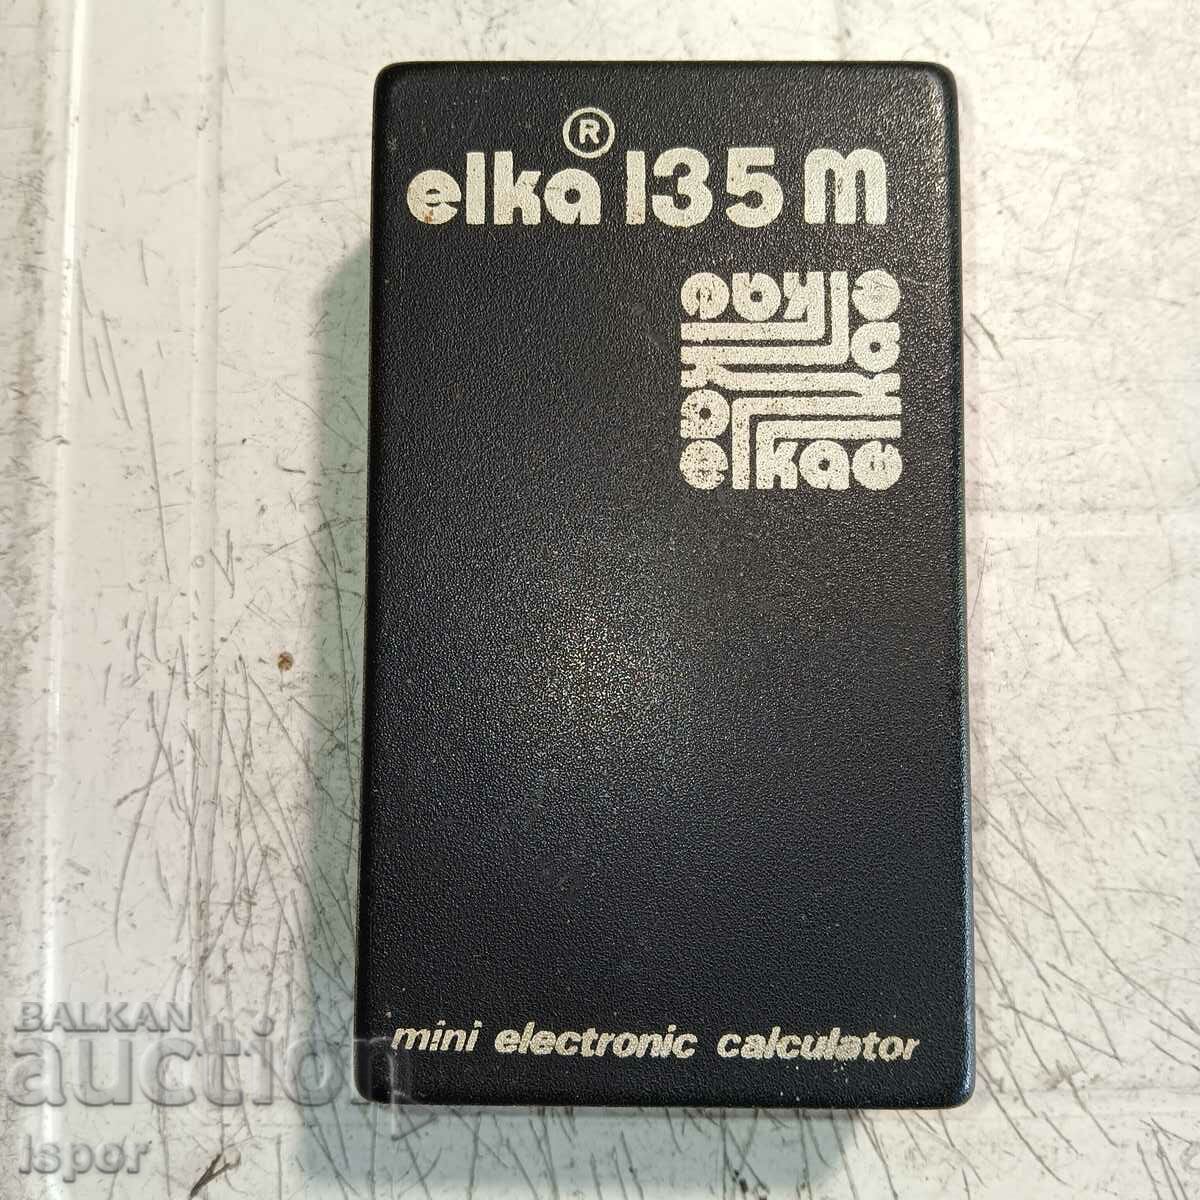 Original box of ELKA 135M